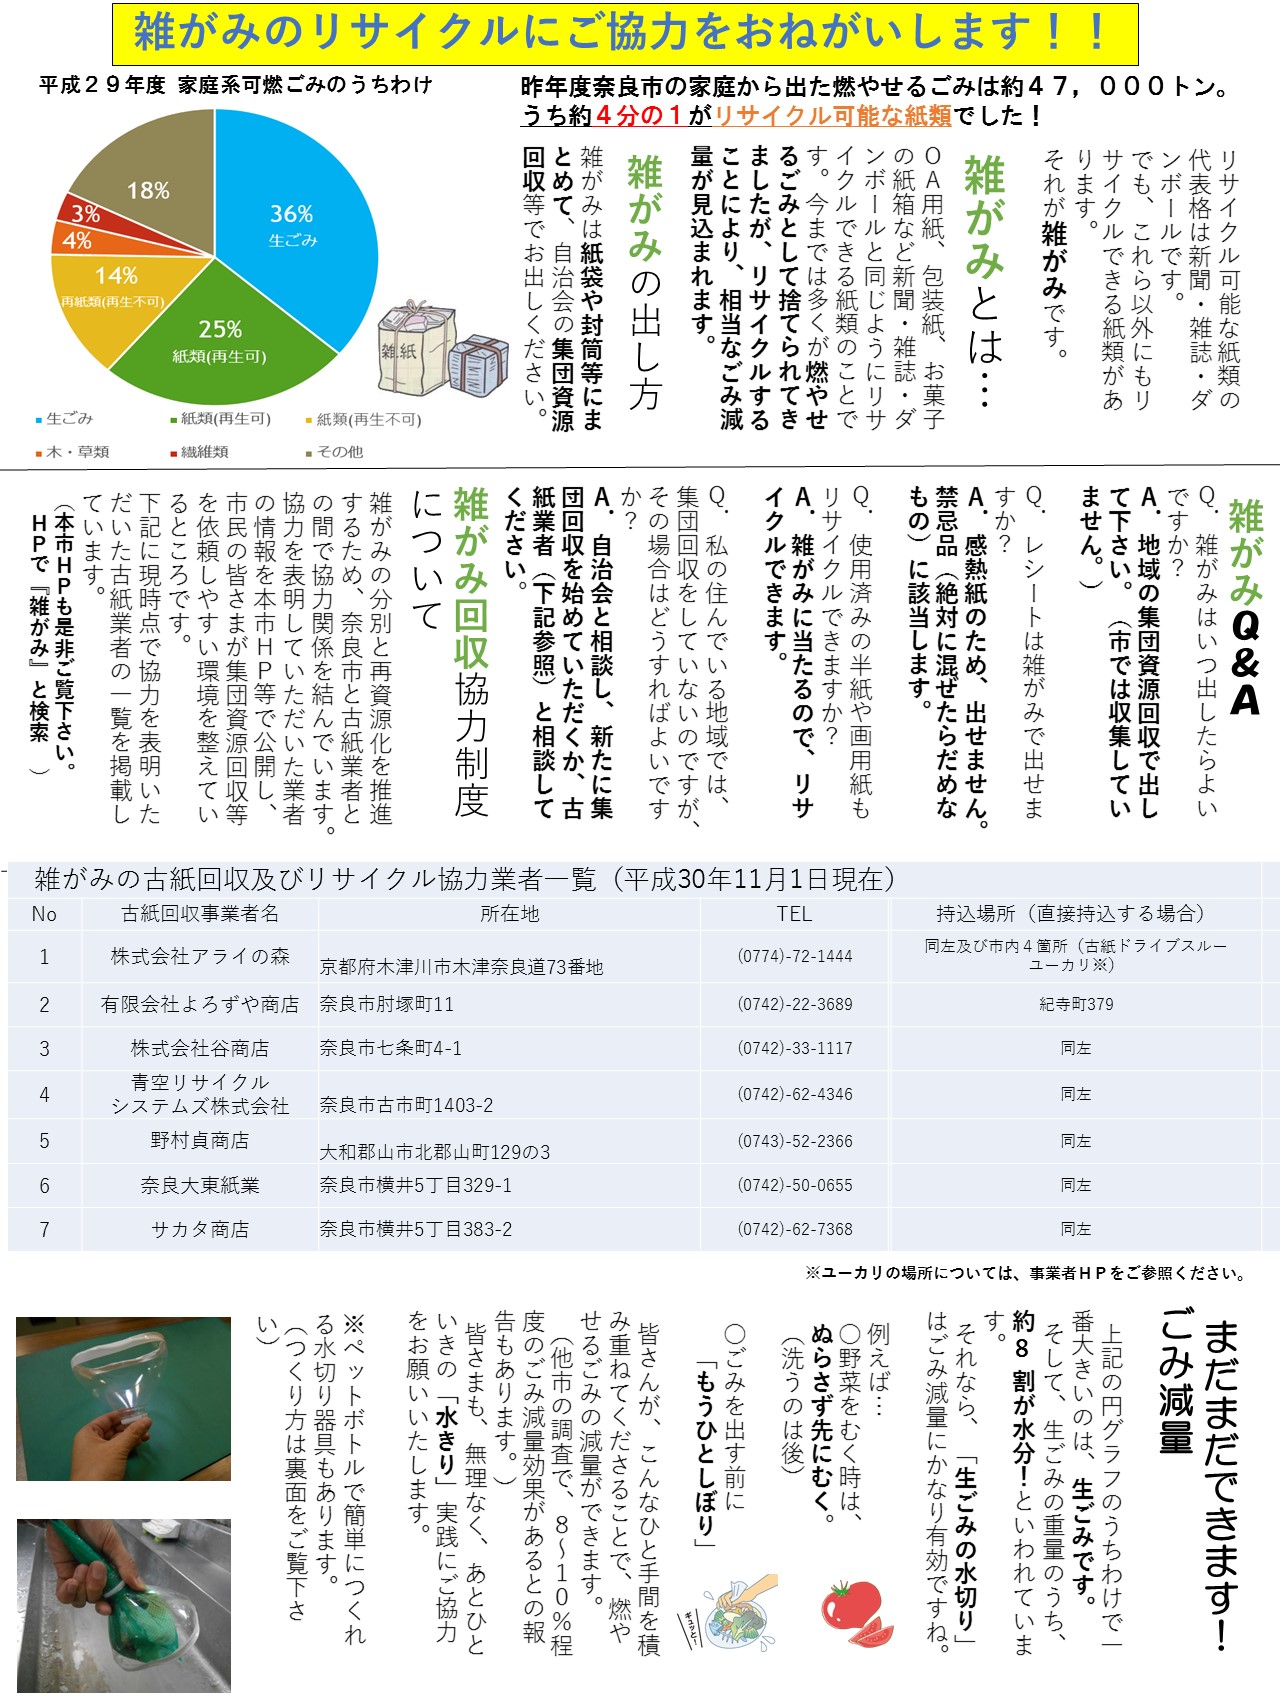 ごみの減量など奈良市のごみ関連施策についての画像